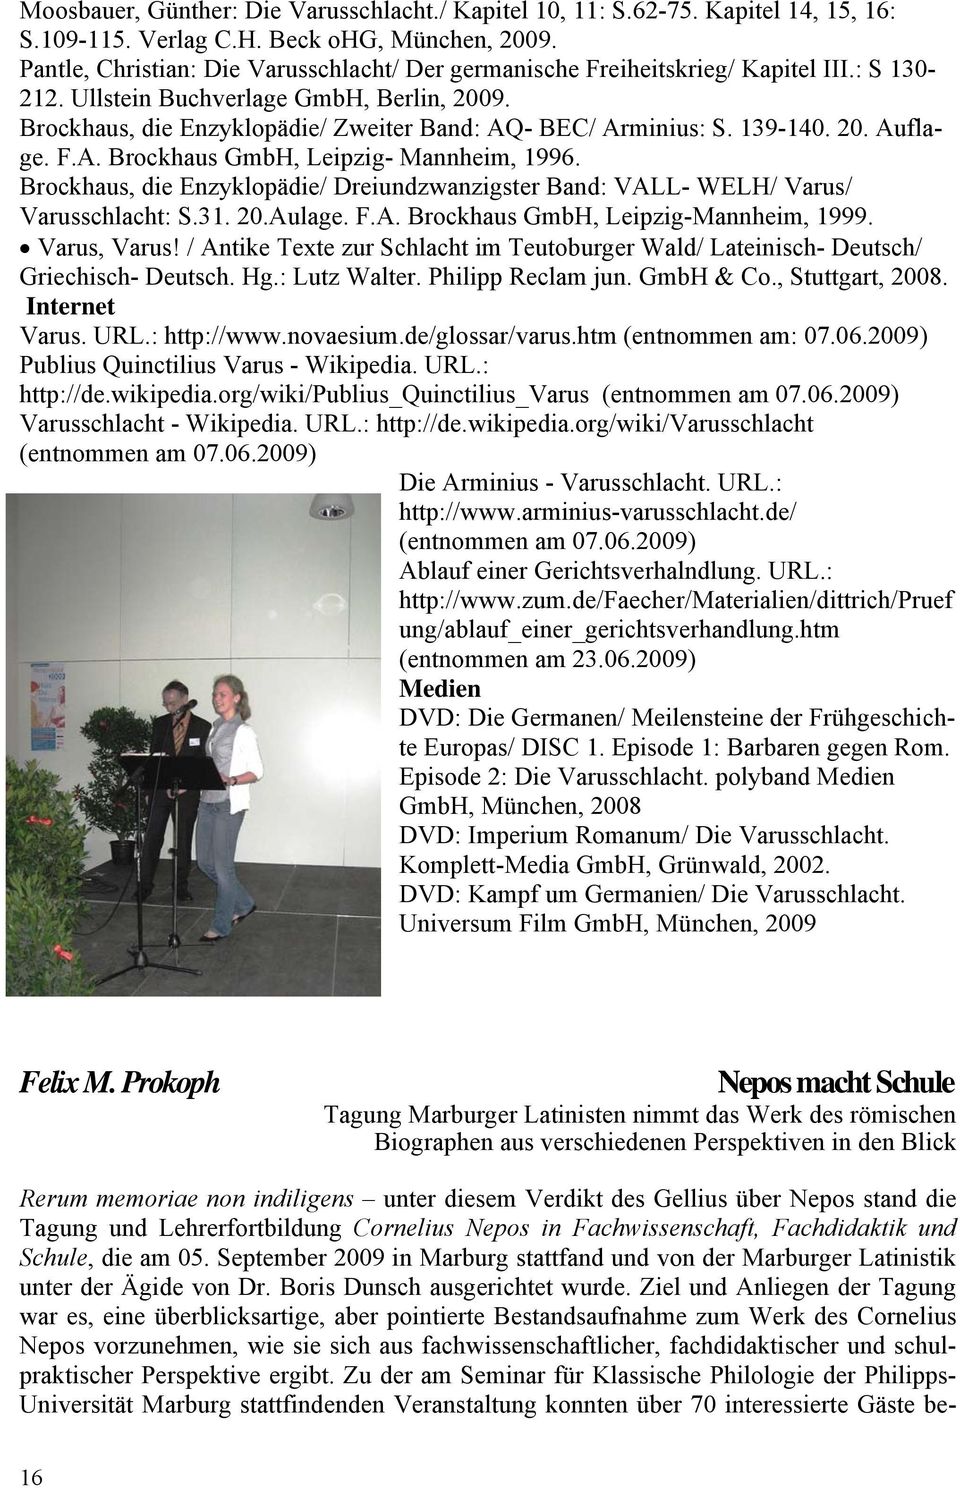 139-140. 20. Auflage. F.A. Brockhaus GmbH, Leipzig- Mannheim, 1996. Brockhaus, die Enzyklopädie/ Dreiundzwanzigster Band: VALL- WELH/ Varus/ Varusschlacht: S.31. 20.Aulage. F.A. Brockhaus GmbH, Leipzig-Mannheim, 1999.